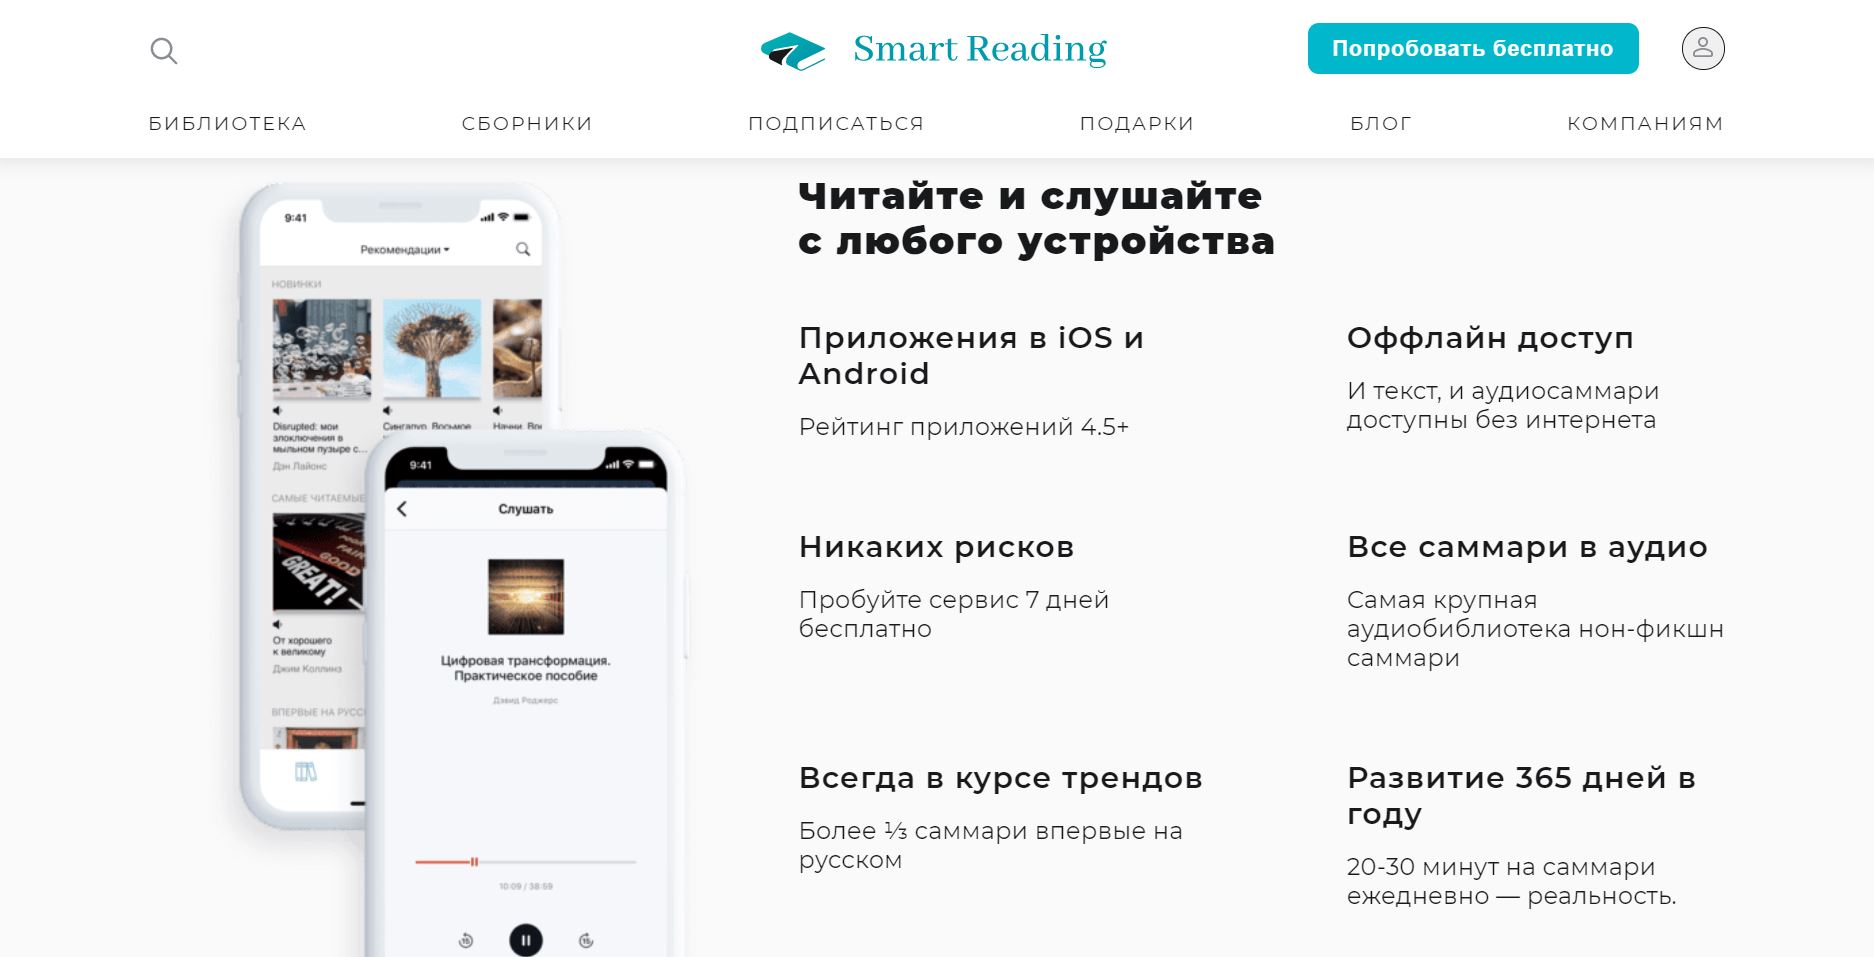 Сервис Smart Reading. Библиотека саммари для чтения нон-фикшн книг